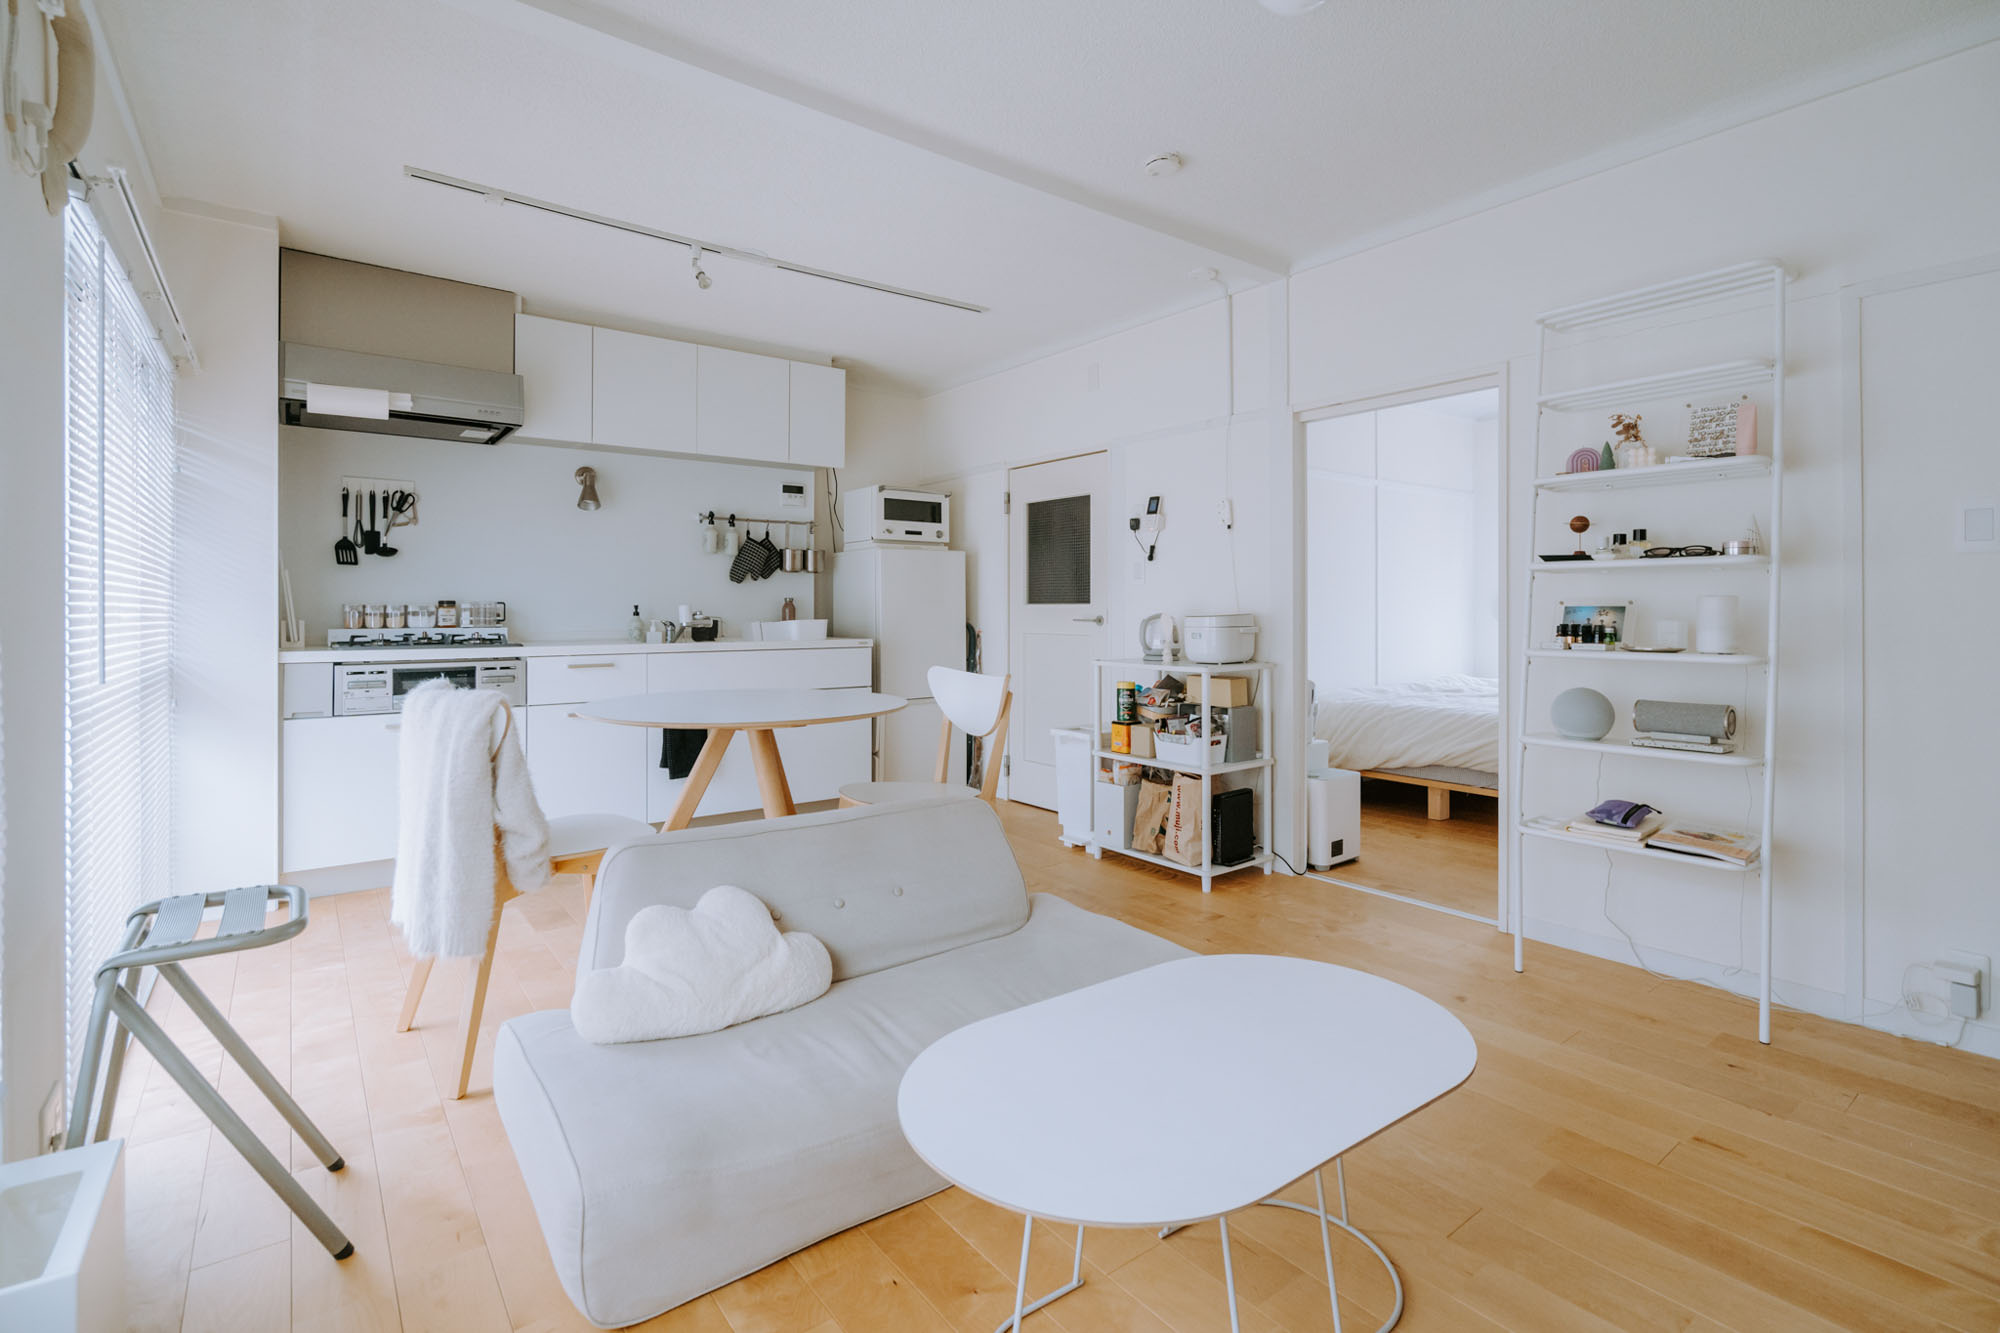 真っ白な大きなキッチンが決め手になった、リノベーション賃貸の2LDK。マットな白を基本にしたデザイン性のある家具でまとめて、素敵に住みこなしている二人暮らしのお部屋に伺いました。